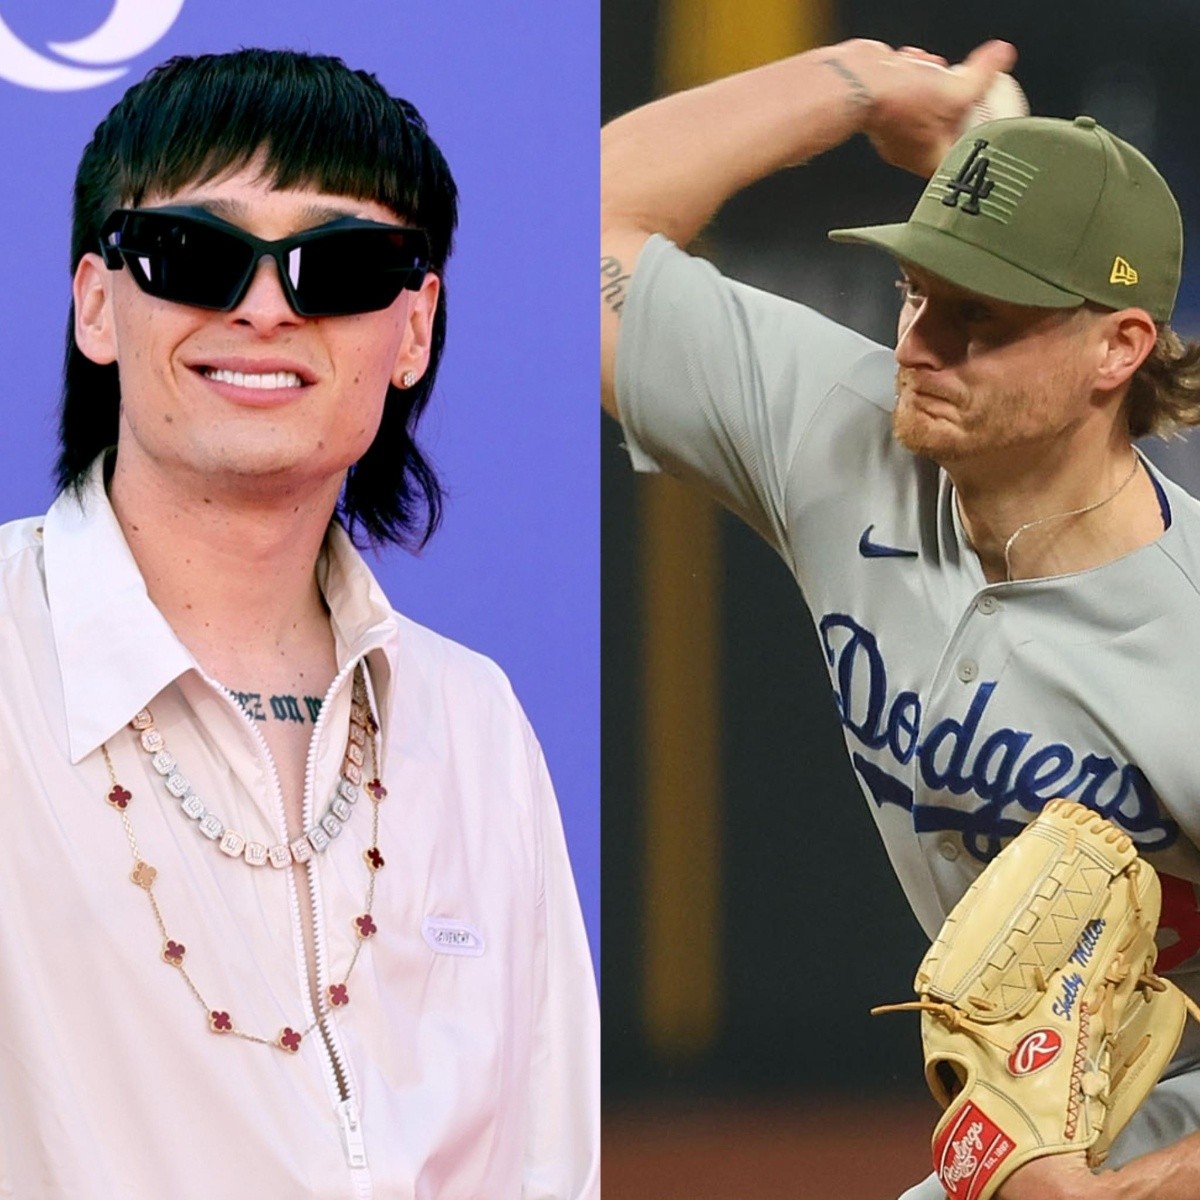 Peso Pluma: ¡Invitado de lujo! El famoso cantante lanzará la primera bola  en partido Dodgers vs Pirates